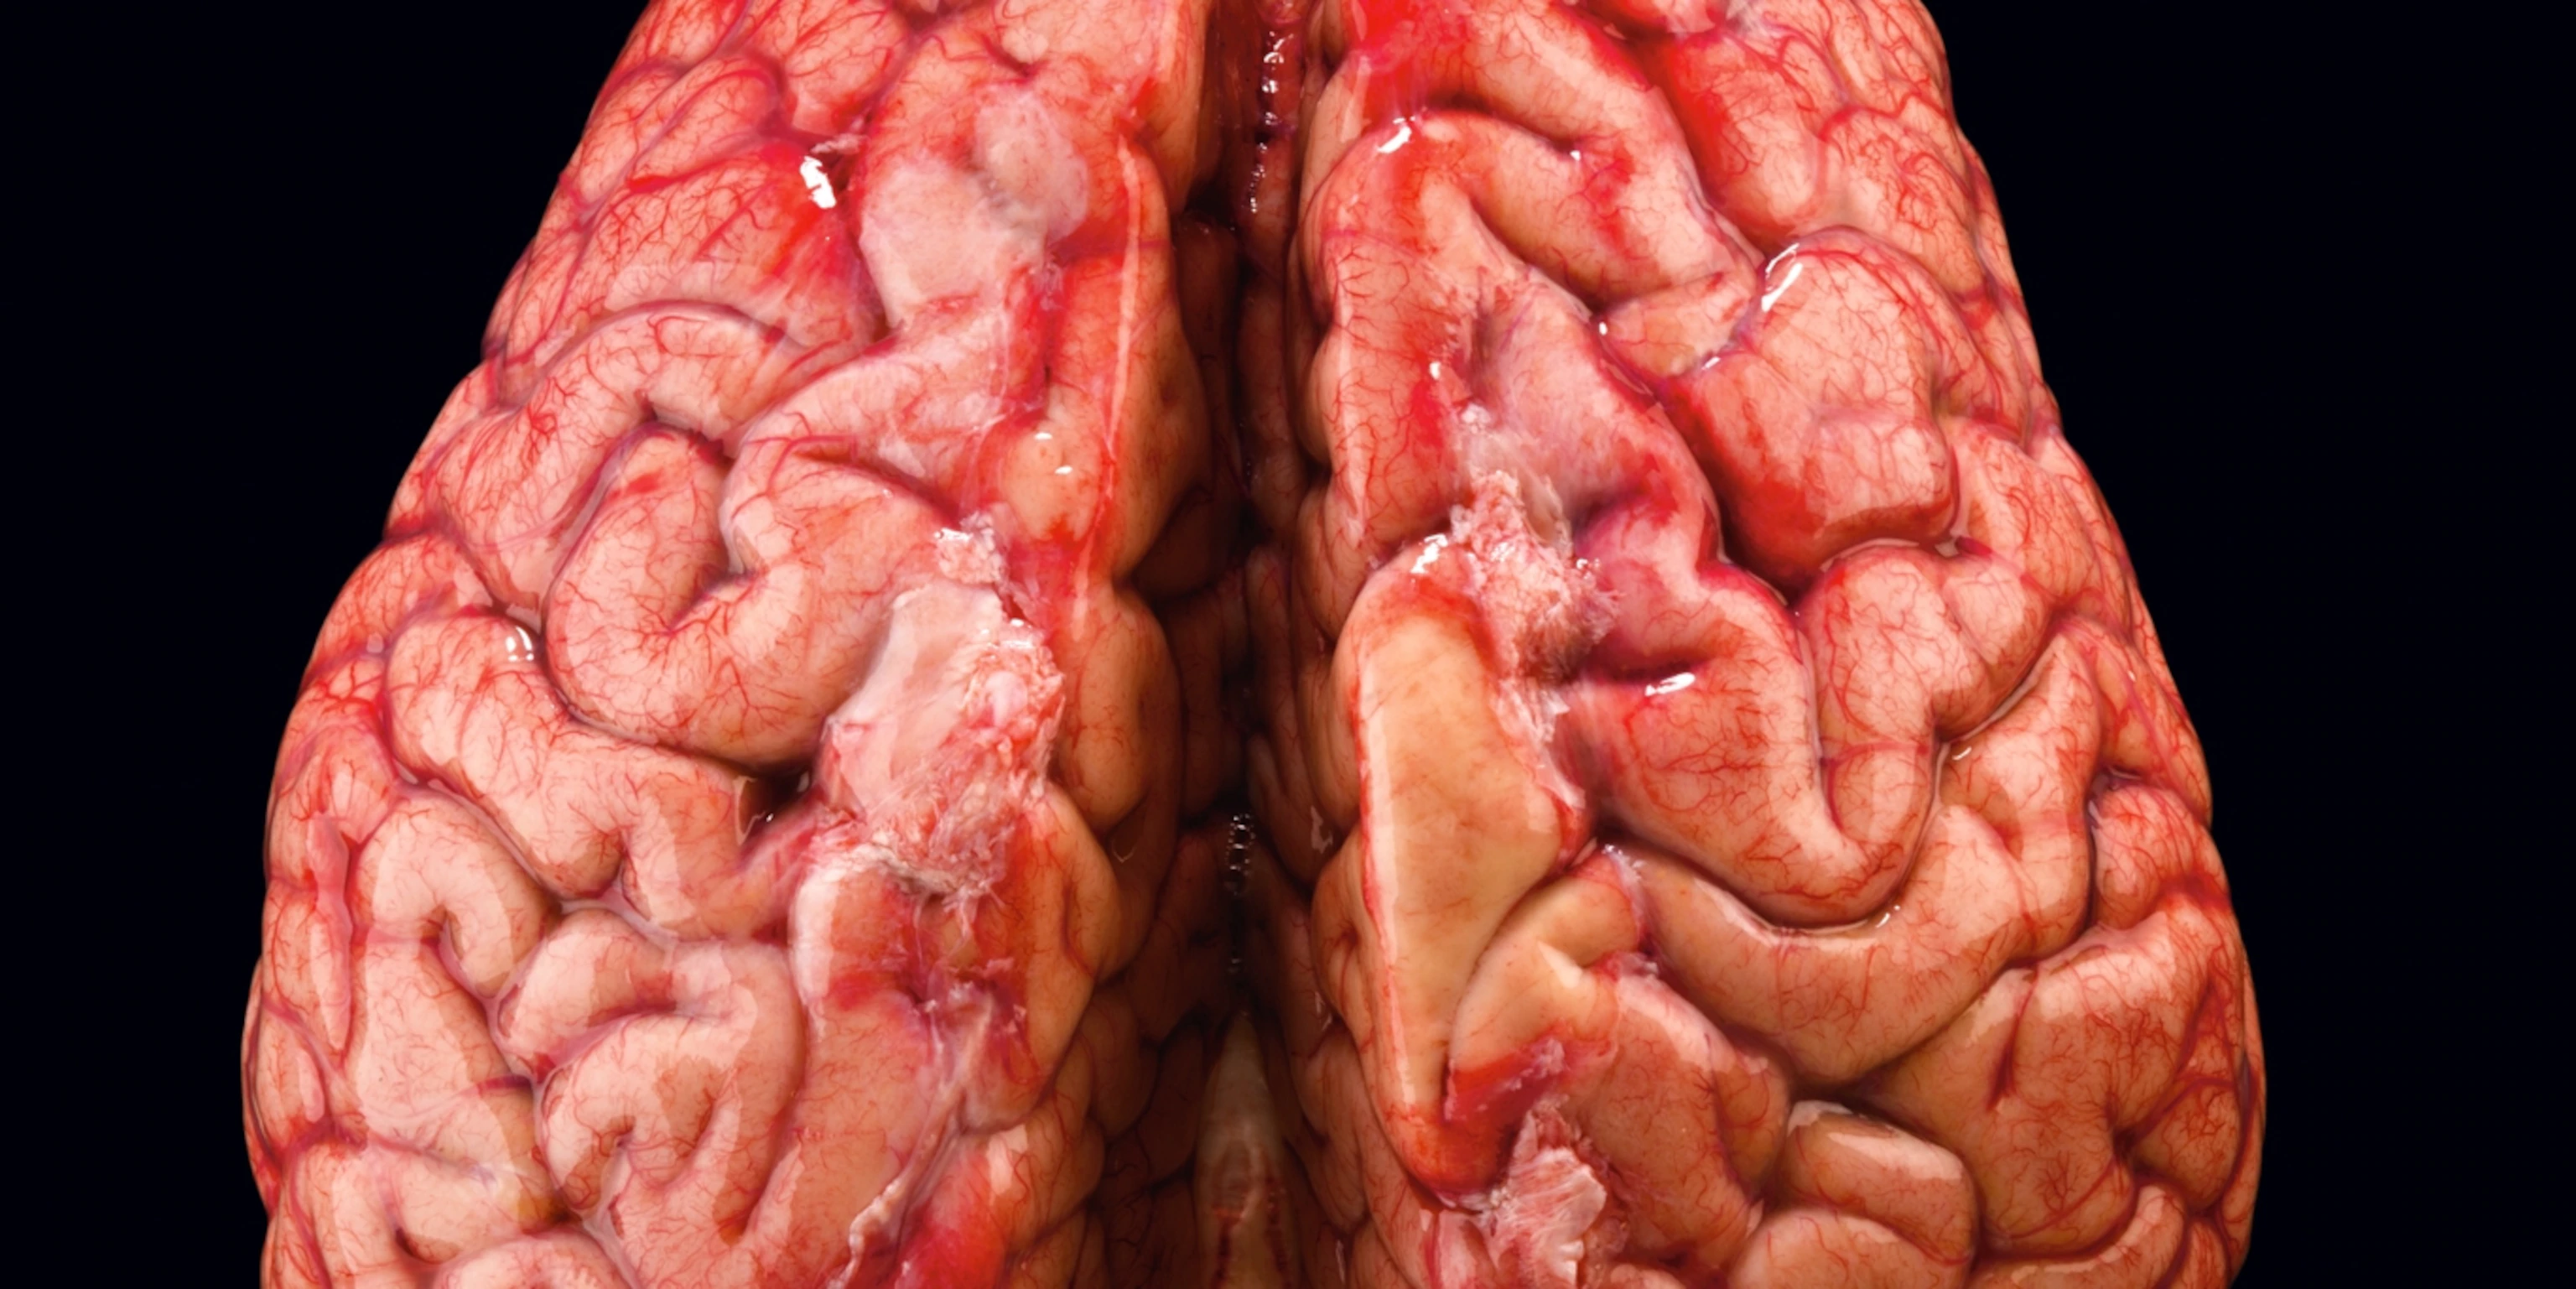 عکس نزدیک شده و واقعی مغز انسان با کیفیت حیرت انگیز